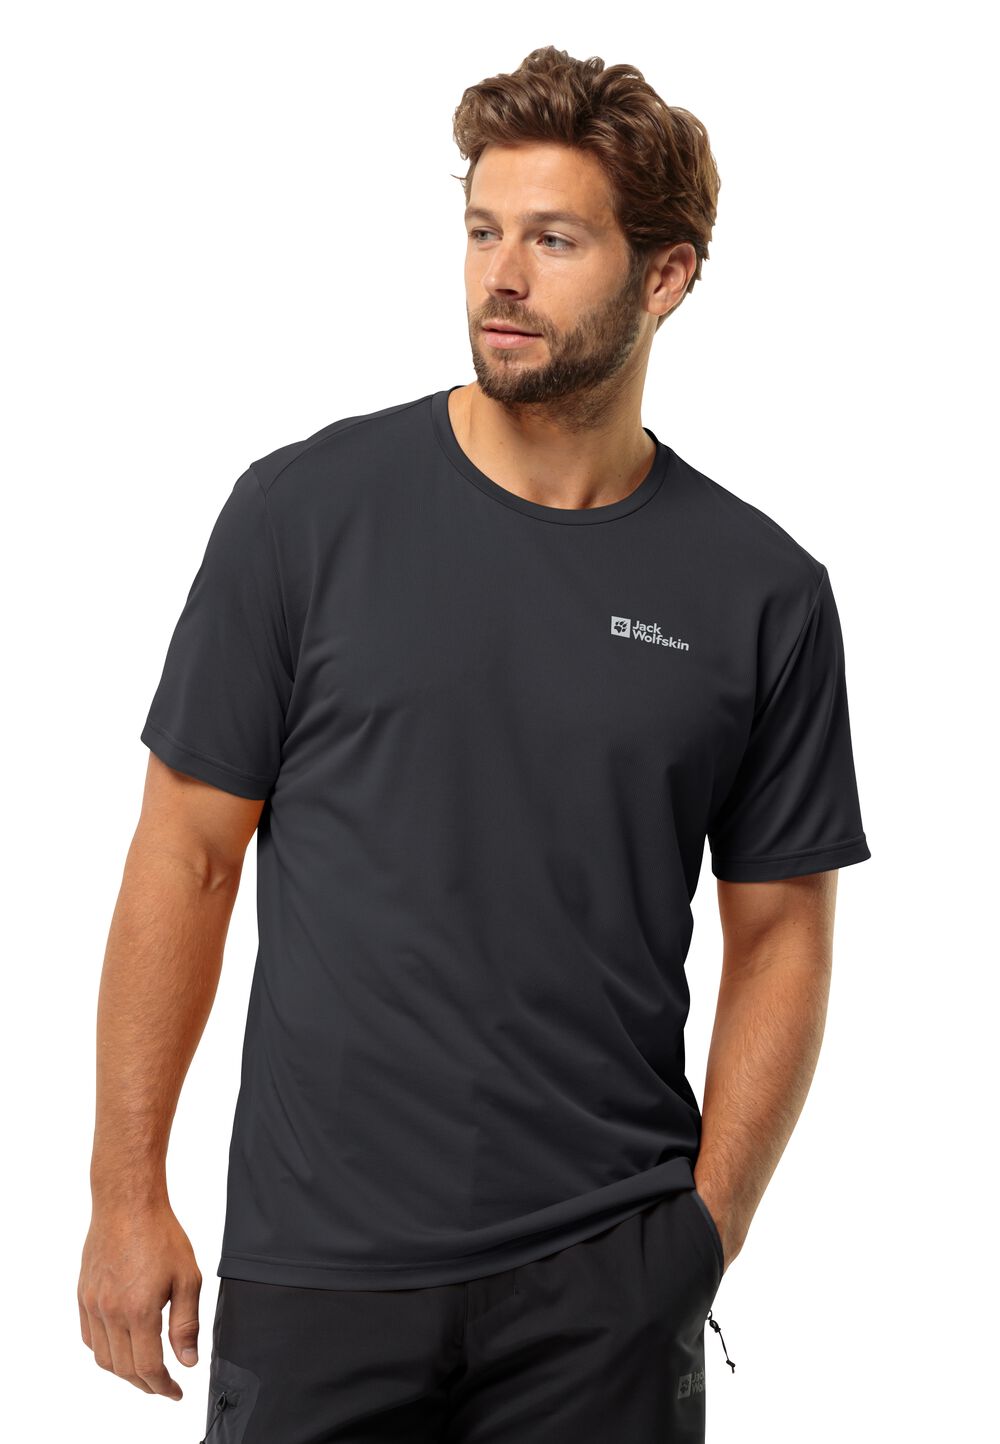 Jack Wolfskin Delgami S S Men Functioneel shirt Heren 3XL zwart black